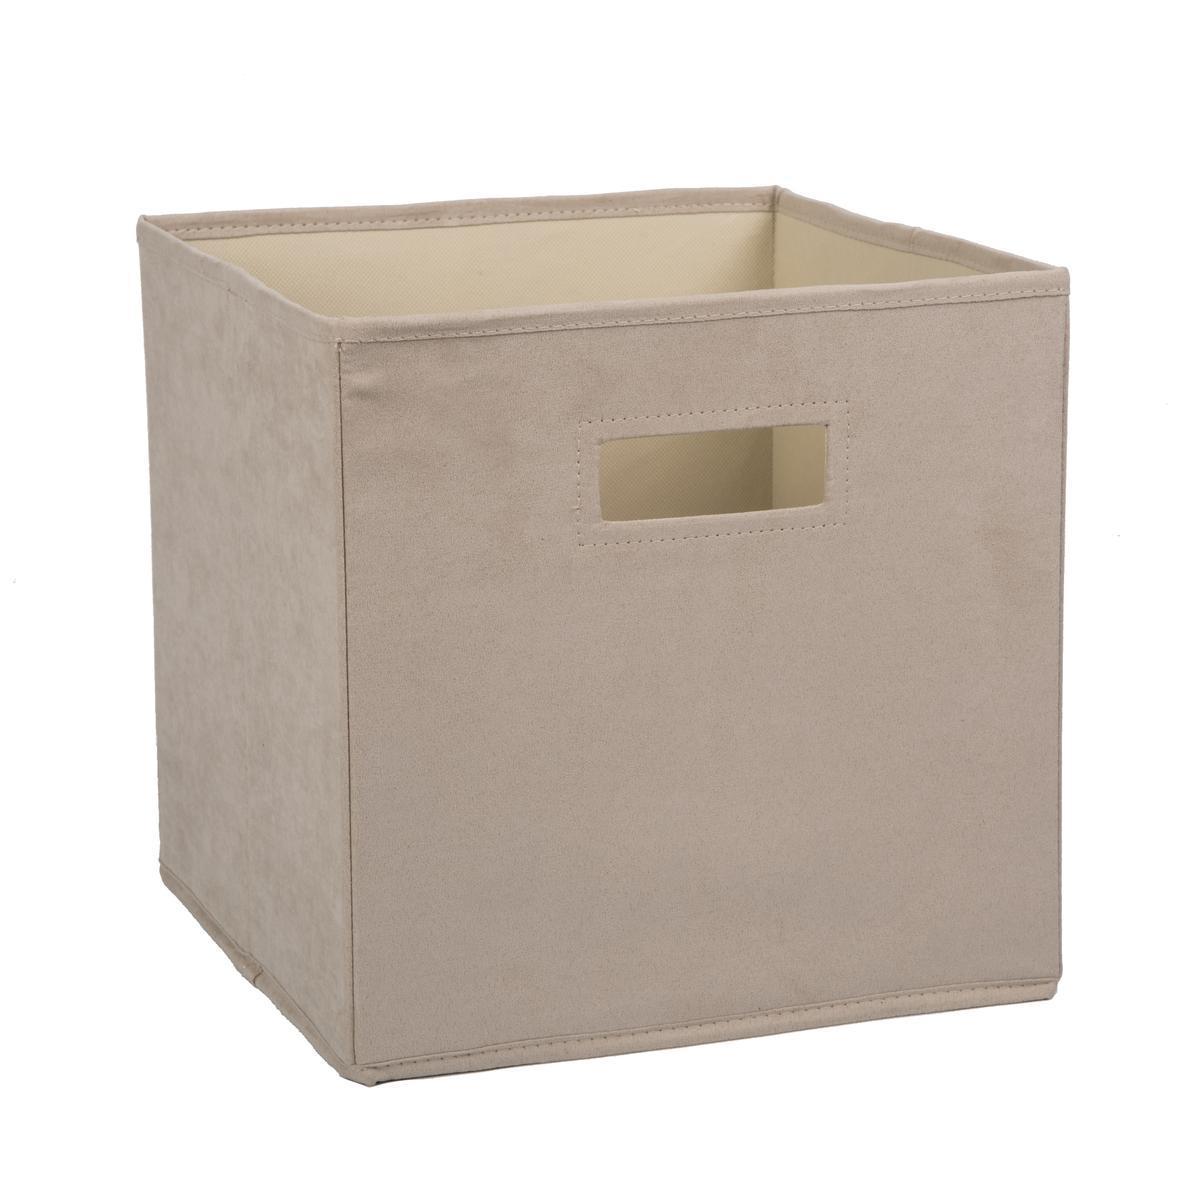 Cube de rangement en suédine - 28 x 28 x H 28 cm - Beige